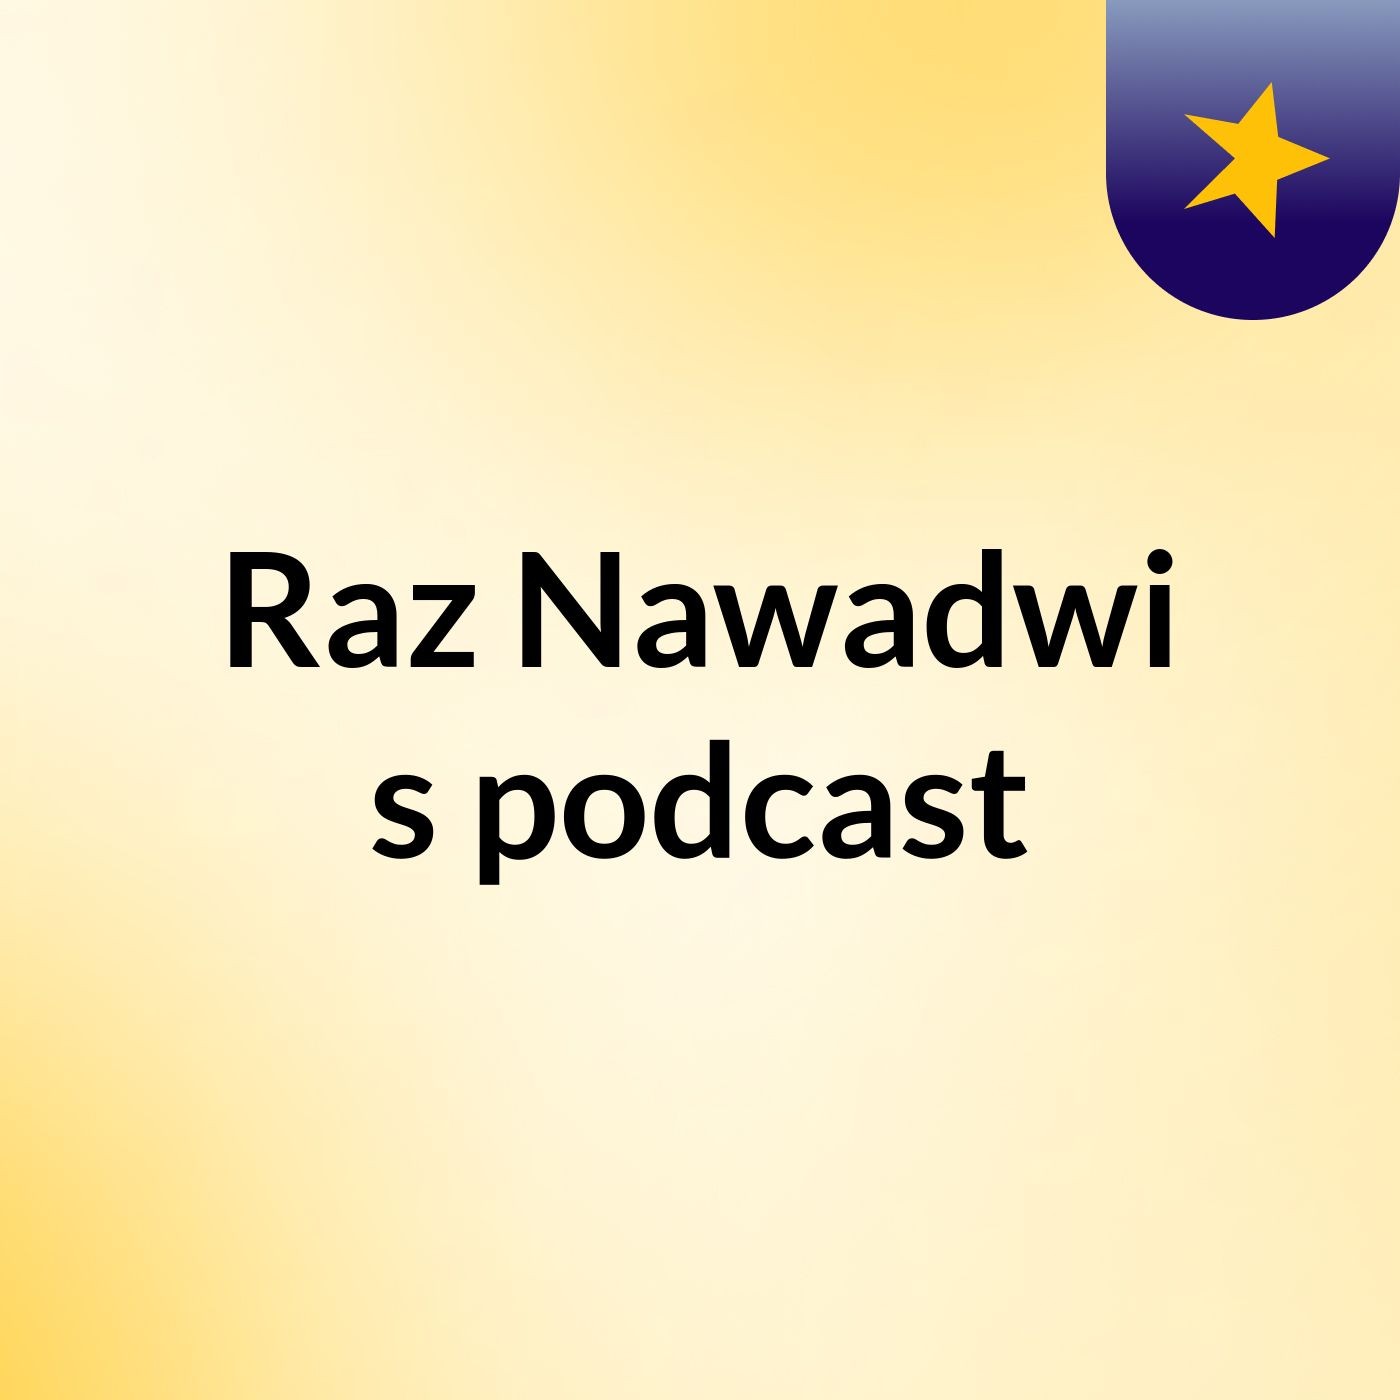 Raz Nawadwi's podcast